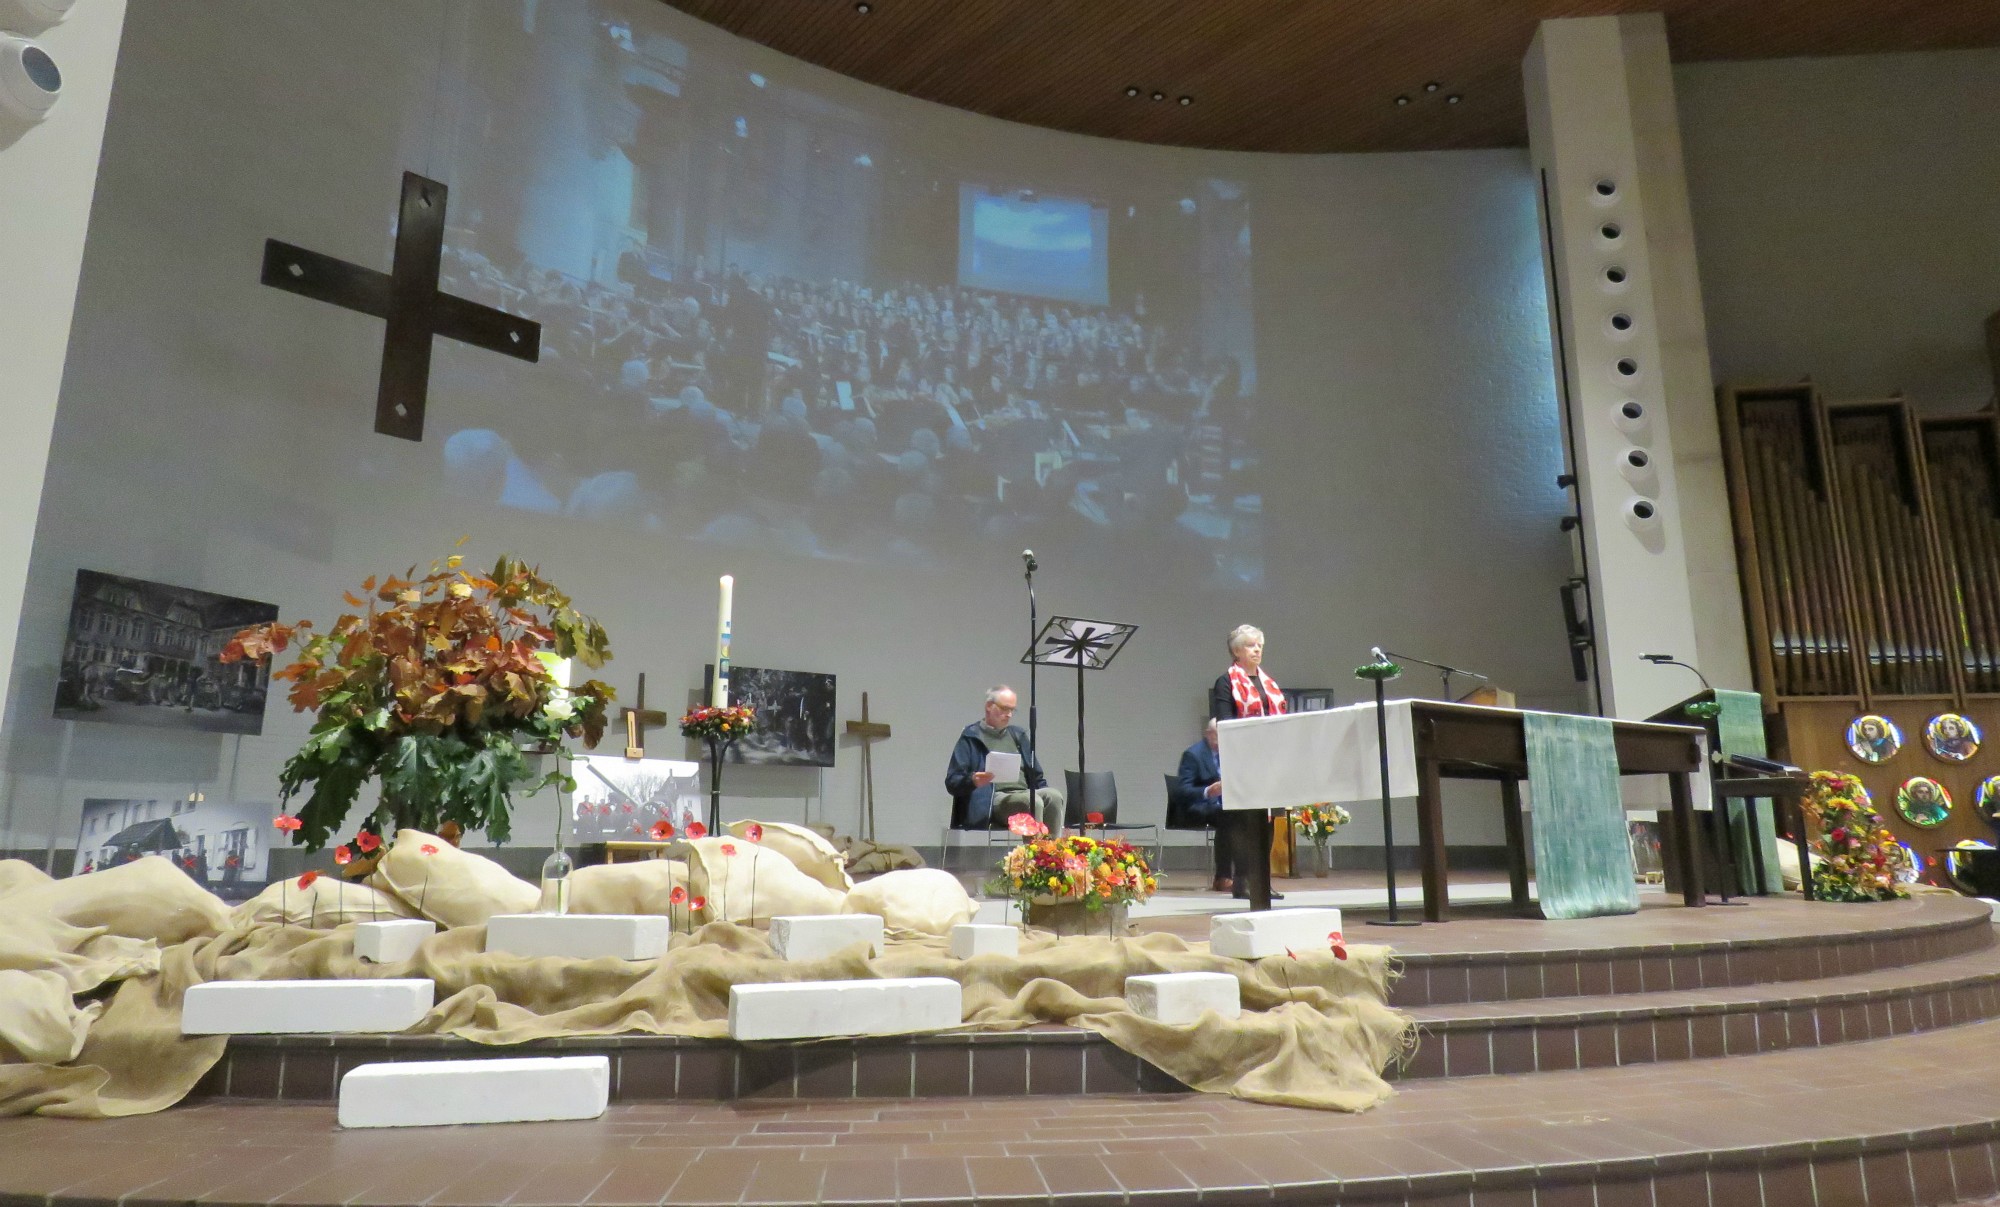 Viering 'Laten we vrede dromen' | 11 november | Sint-Anna-ten-Drieënkerk, Antwerpen Linkeroever